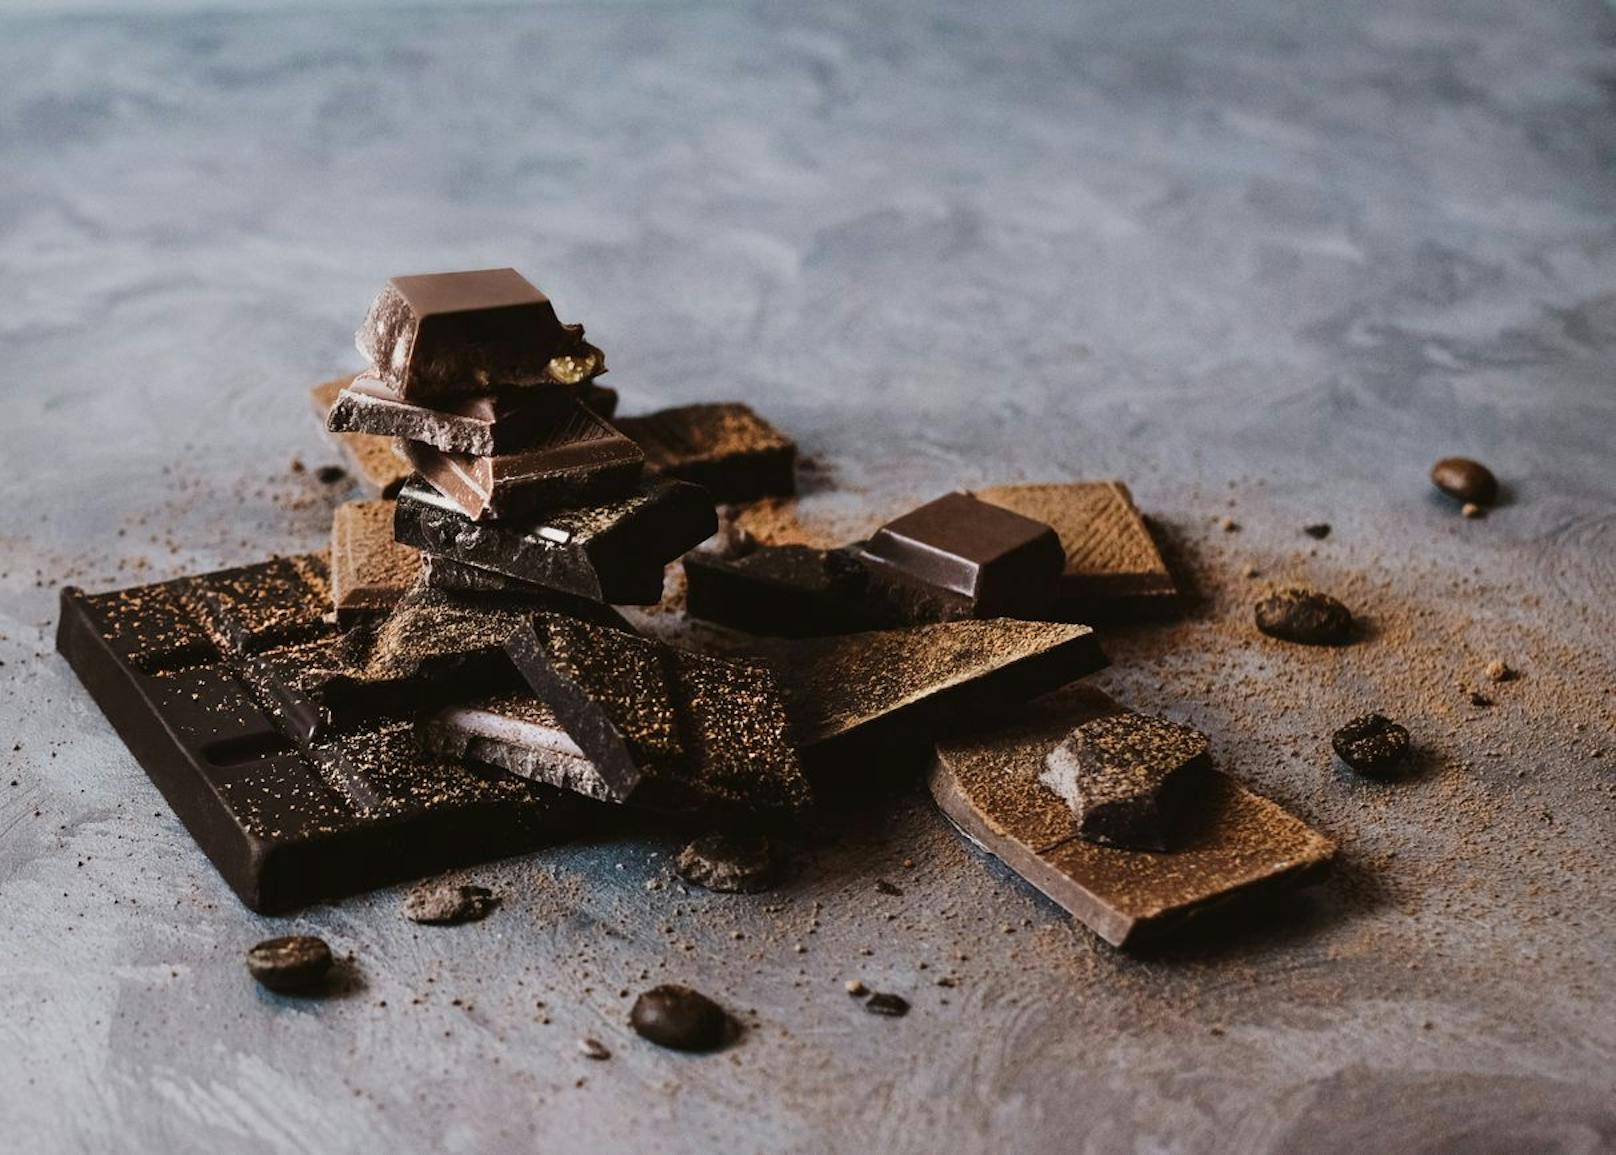 Eine ordentliche Tafel Schokolade schmeckt nicht nur, sie kann auch euphorisierende Zustände auslösen, die vergleichbar mit einem Erlebnis unter Drogeneinfluss sind. 